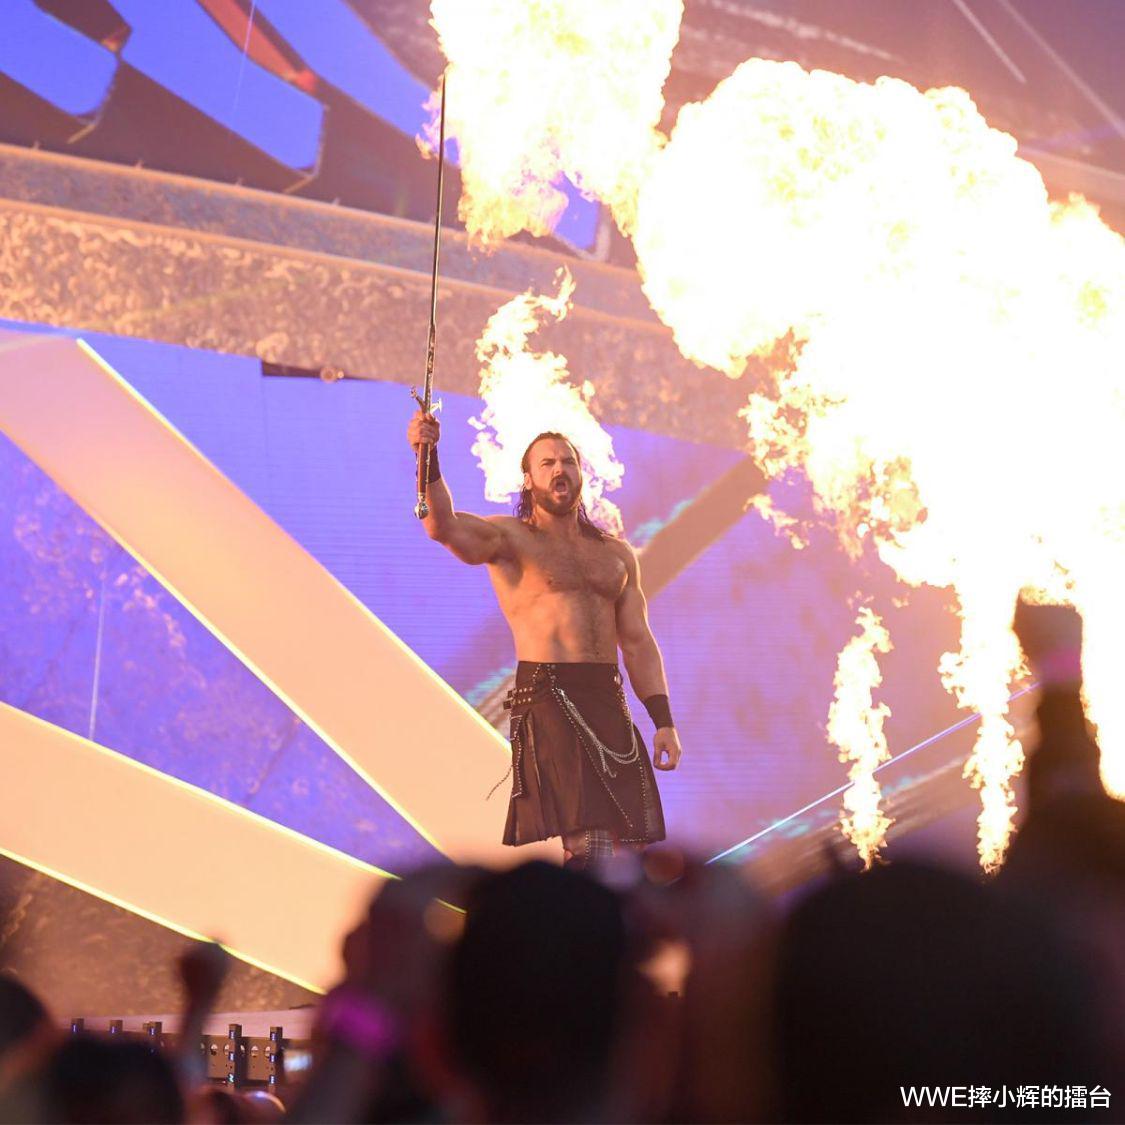 布洛克·莱斯纳|WWE新老祖宗最后一战，莱斯纳连败两场，夏日狂潮能否扳回一城？